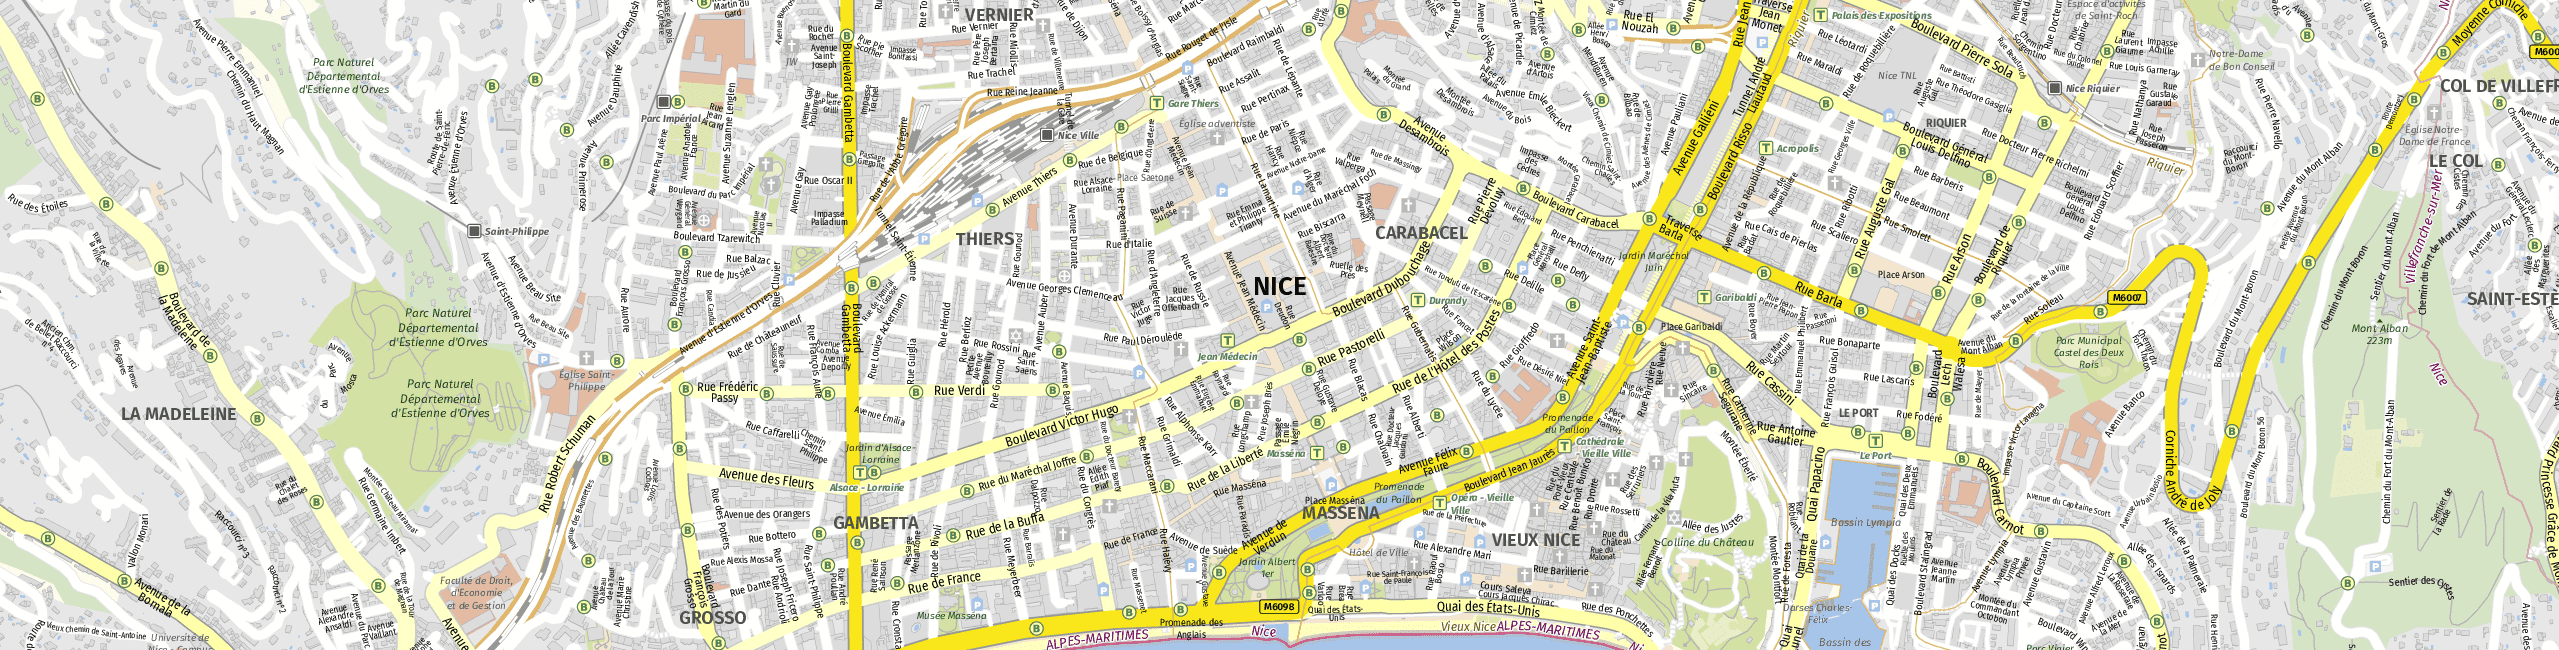 Stadtplan Nizza zum Downloaden.